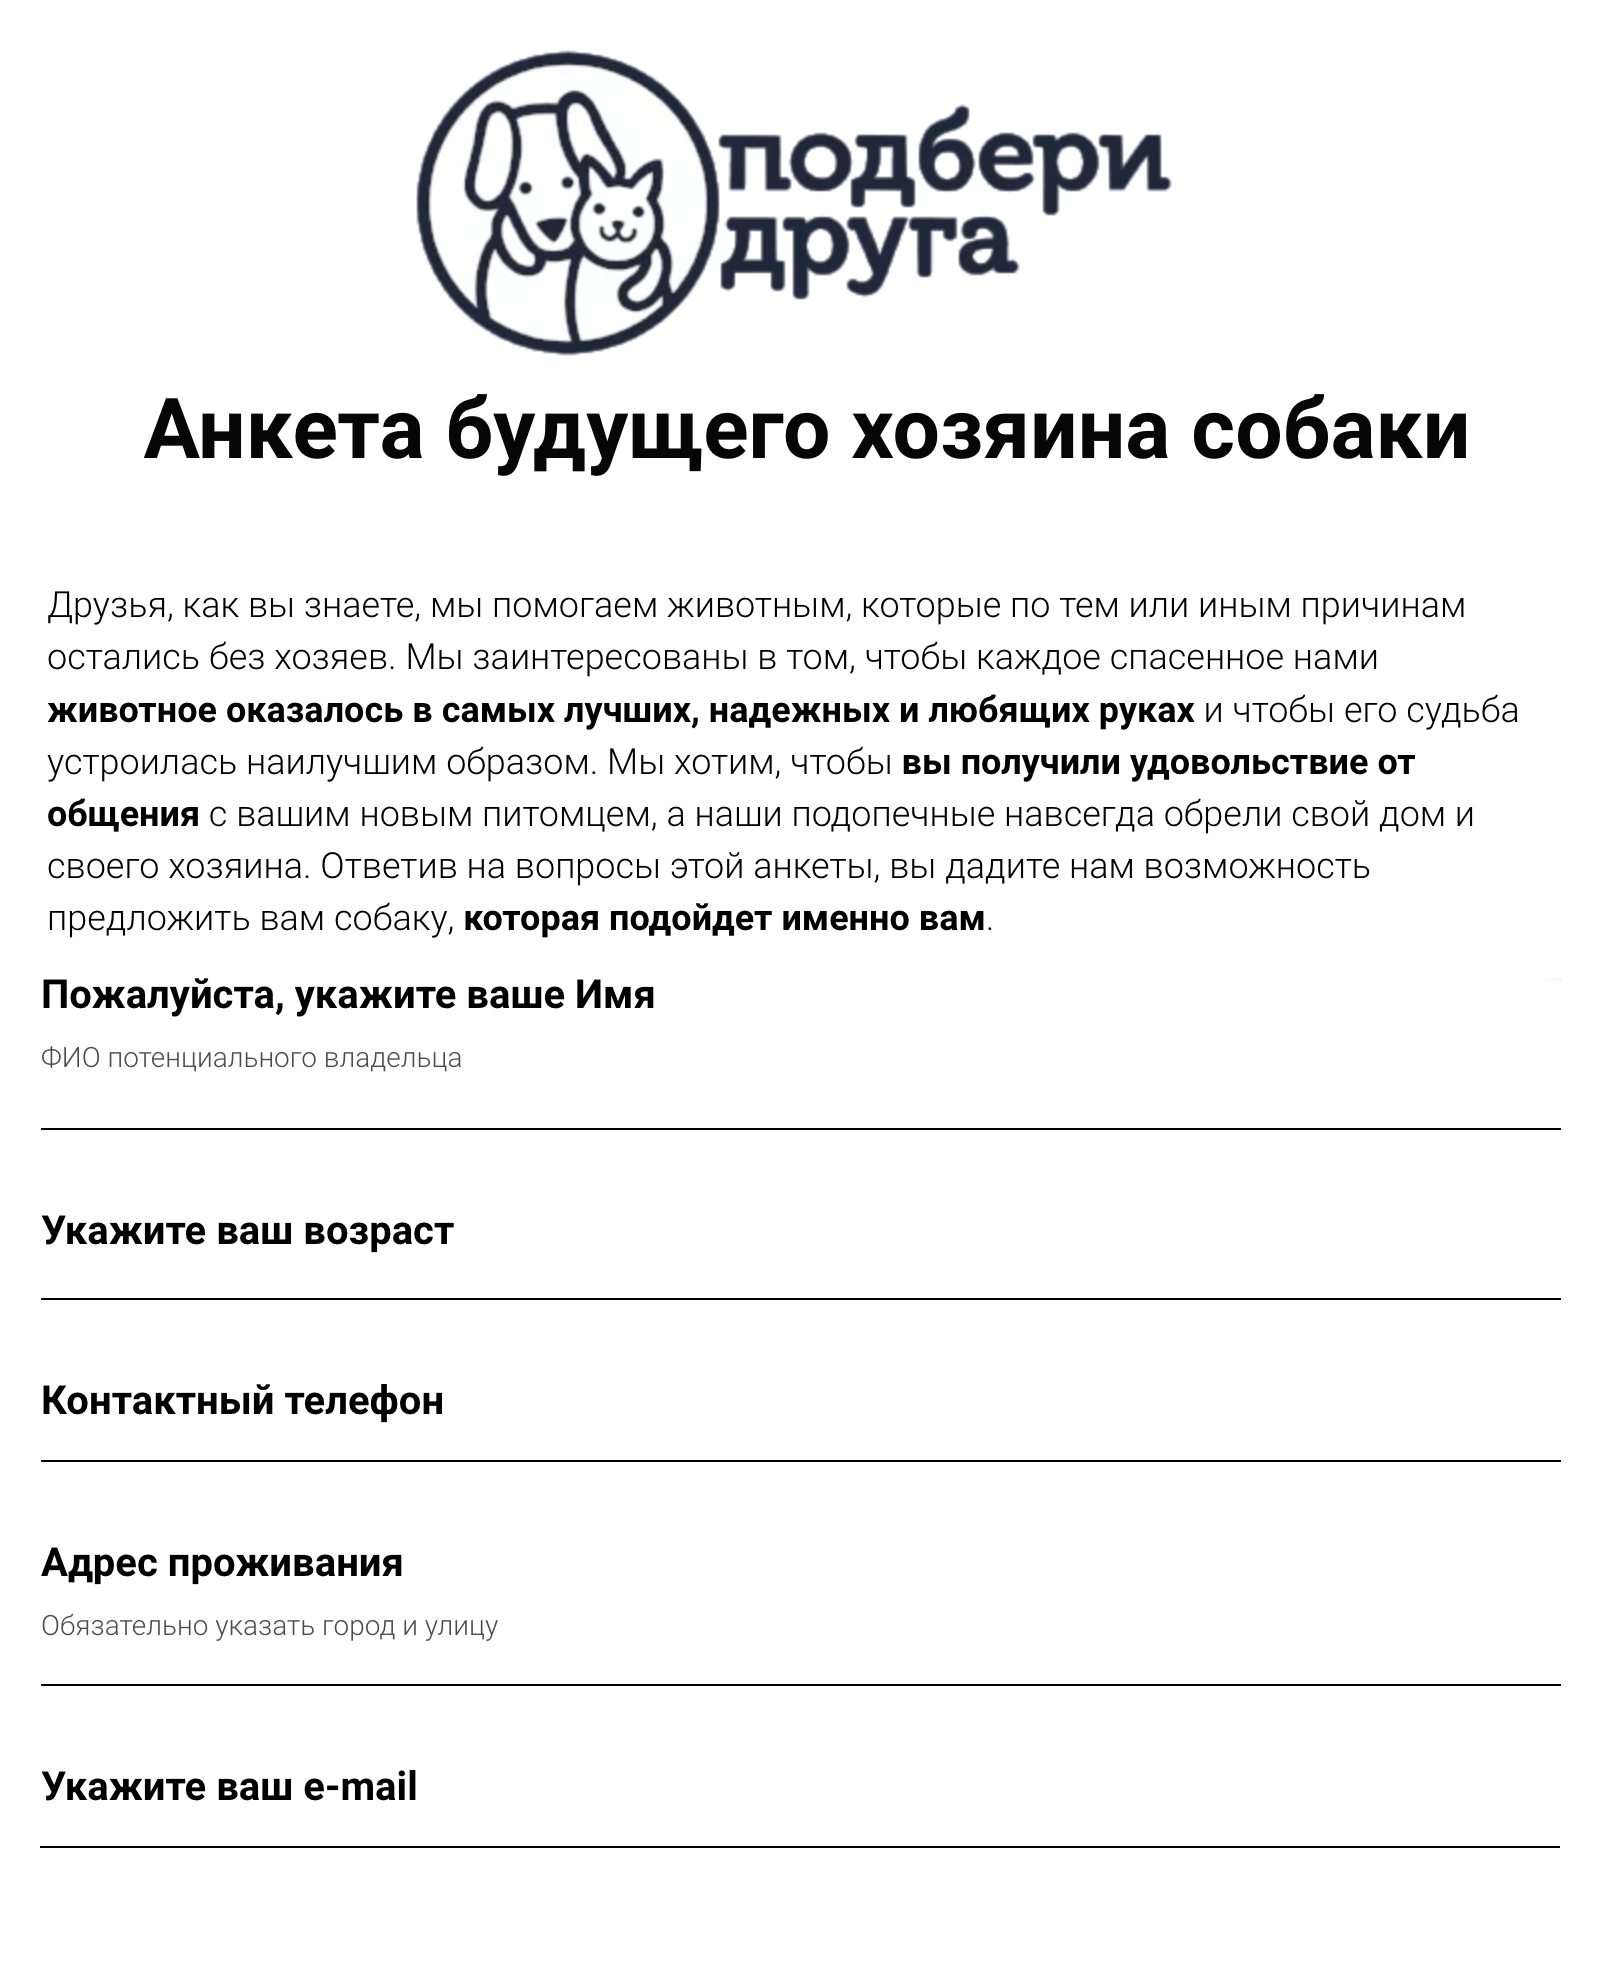 Пример анкеты, которую нужно заполнить будущему владельцу животного из приюта. Соцсети «Фейсбук» и «Инстаграм» принадлежат Meta — организации, деятельность которой признана экстремистской и запрещена на территории РФ. Источник: adoptapet.ru